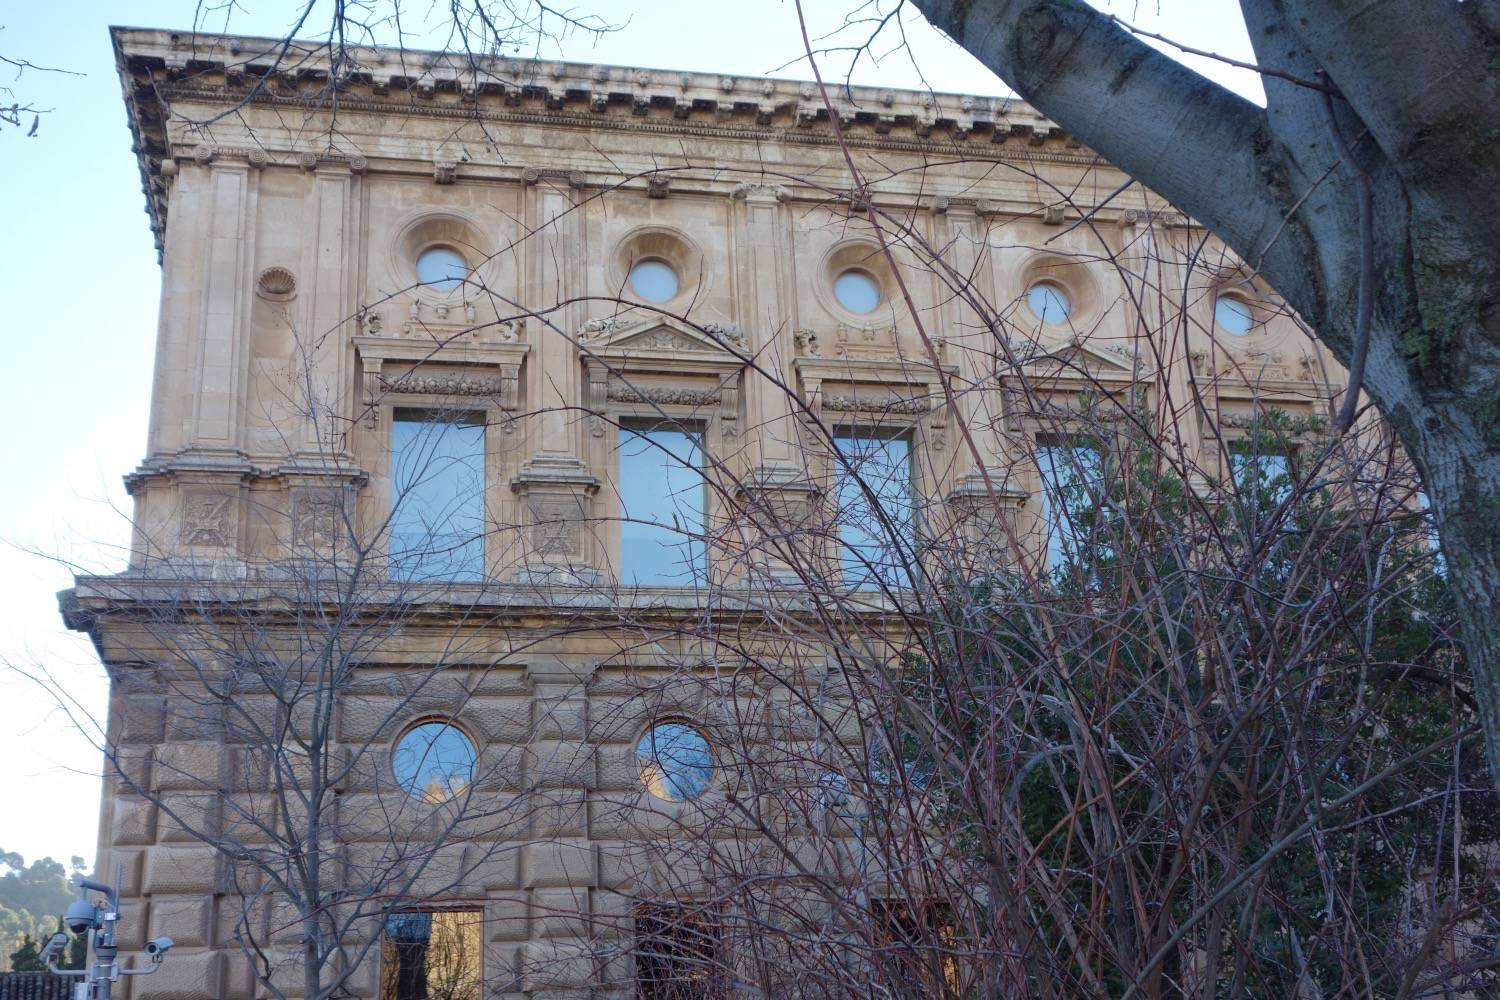 Exterior partial view of palace facade